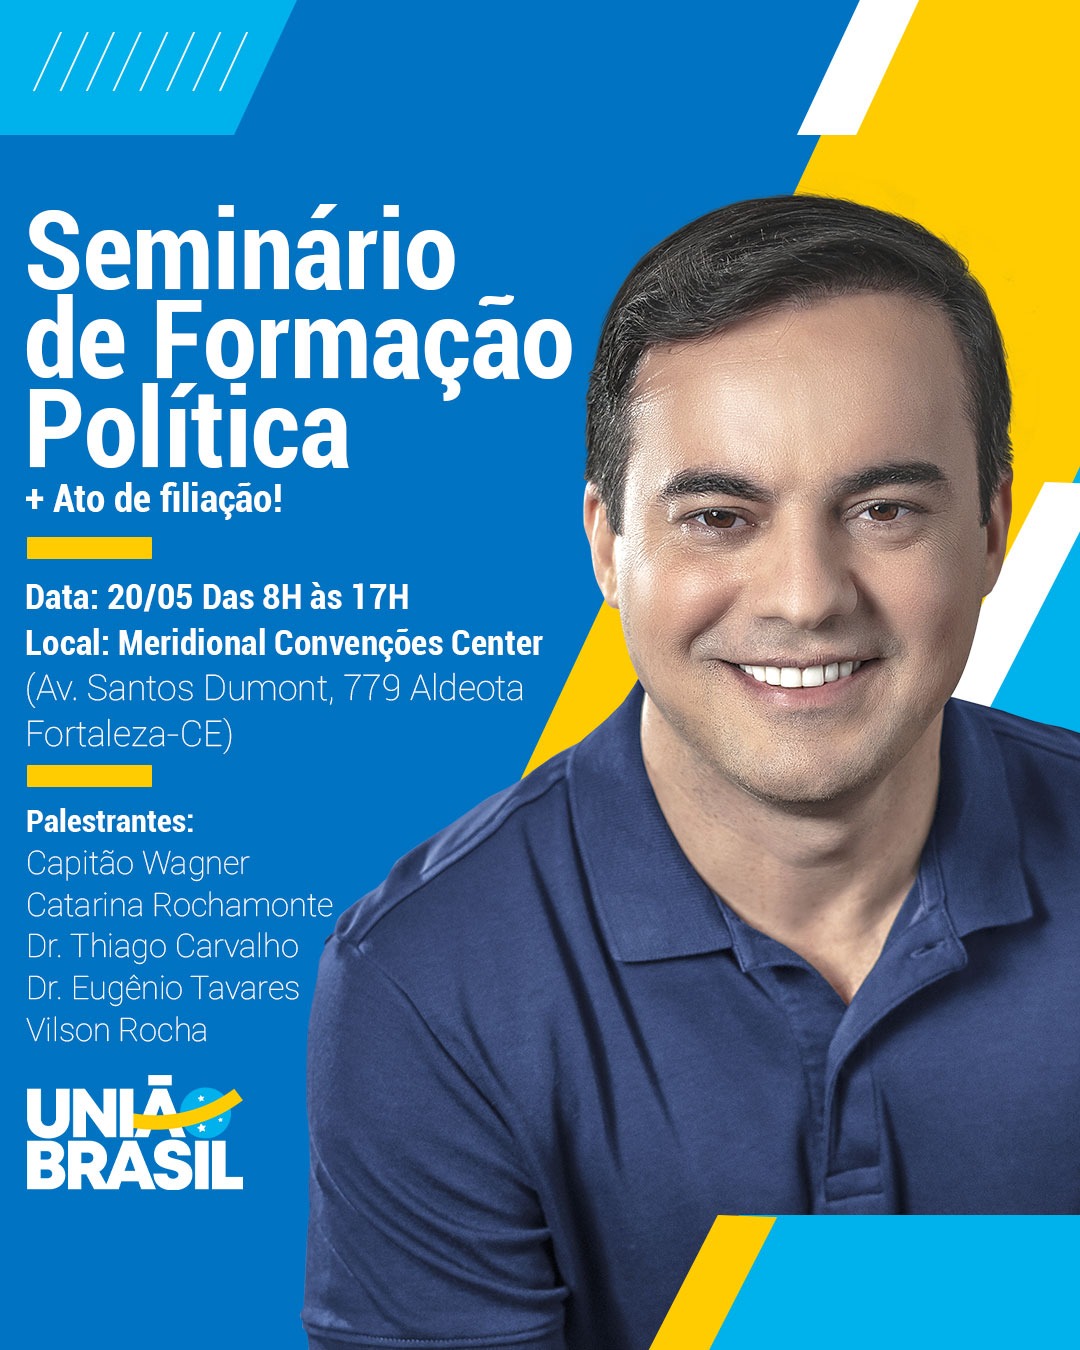 Com presença de Capitão Wagner, União Brasil promove Seminário de Formação Política em Fortaleza